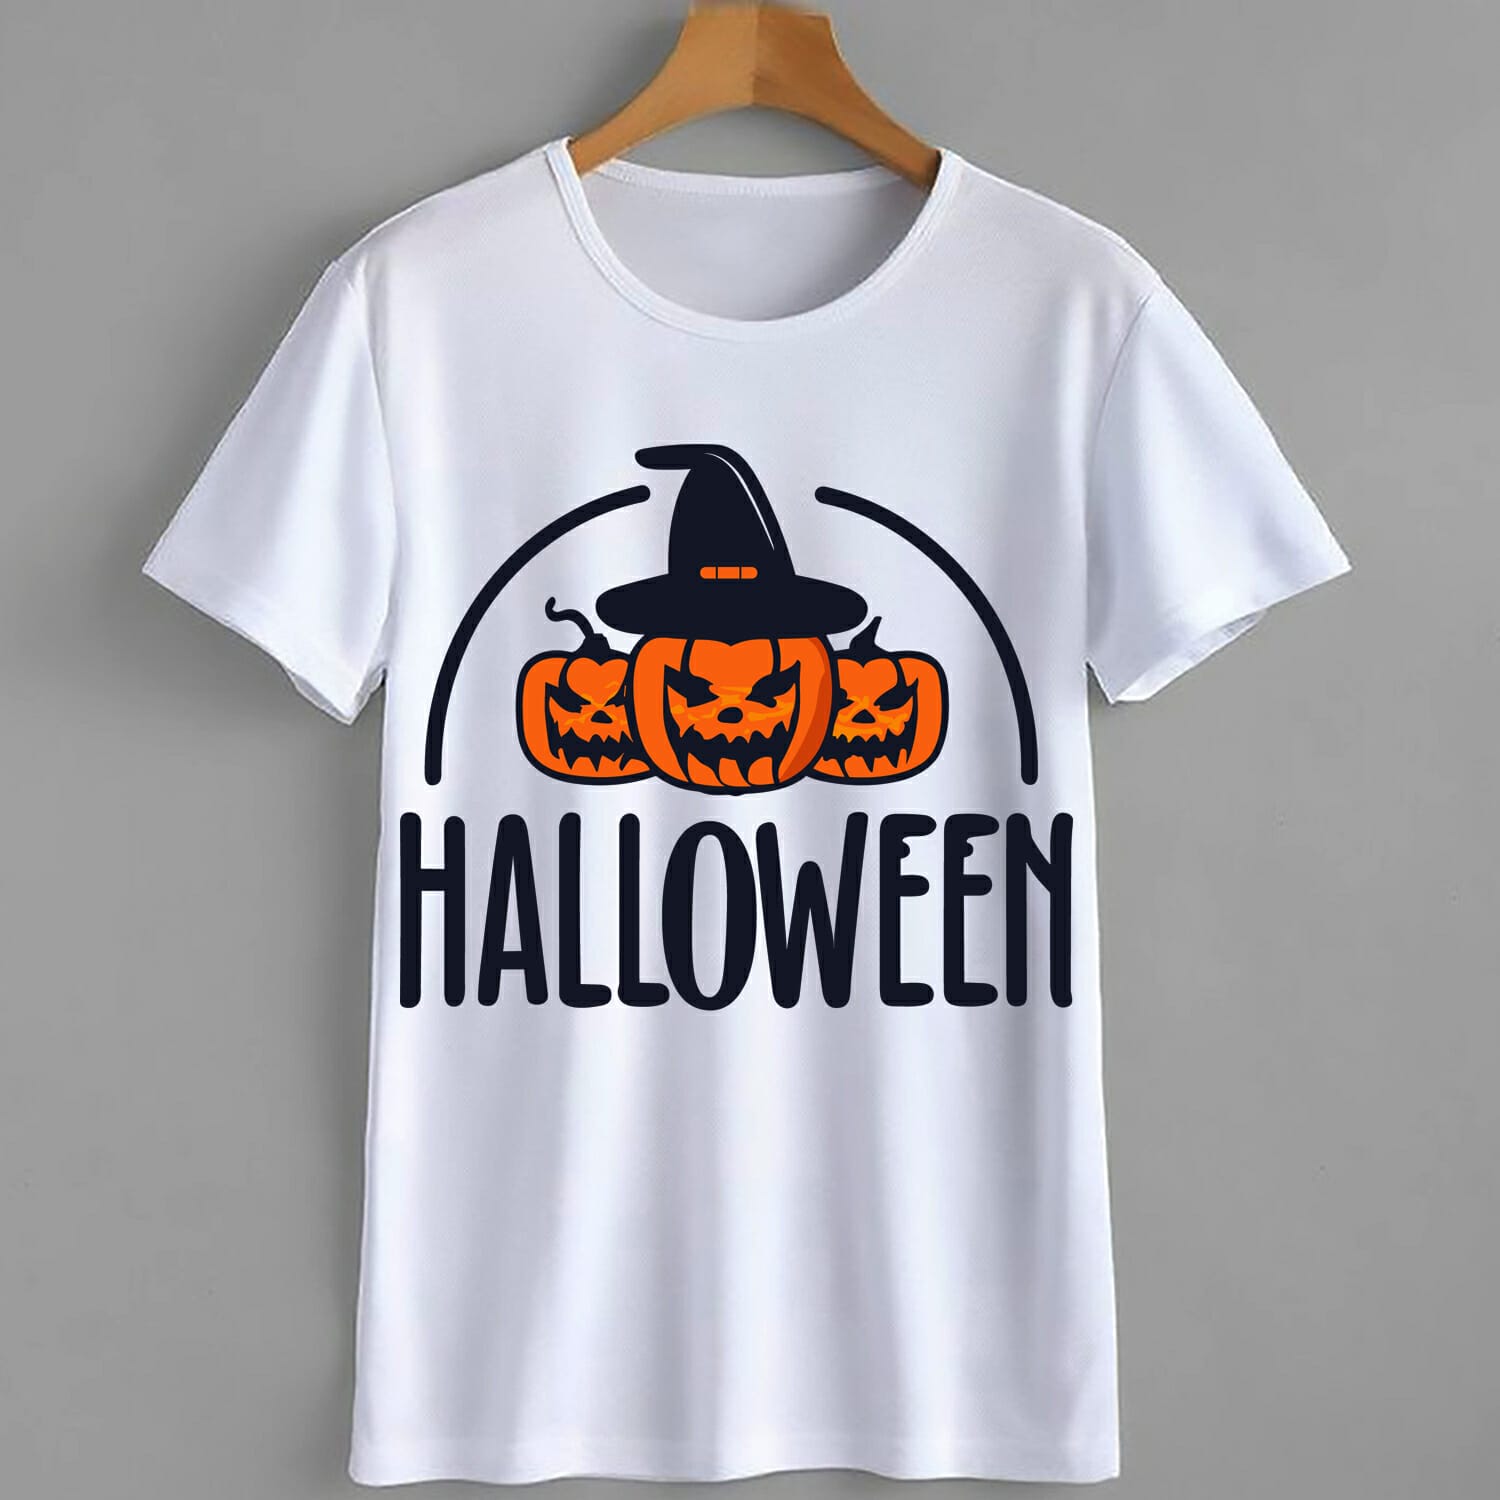 Halloween Pumpkins T-Shirt Design